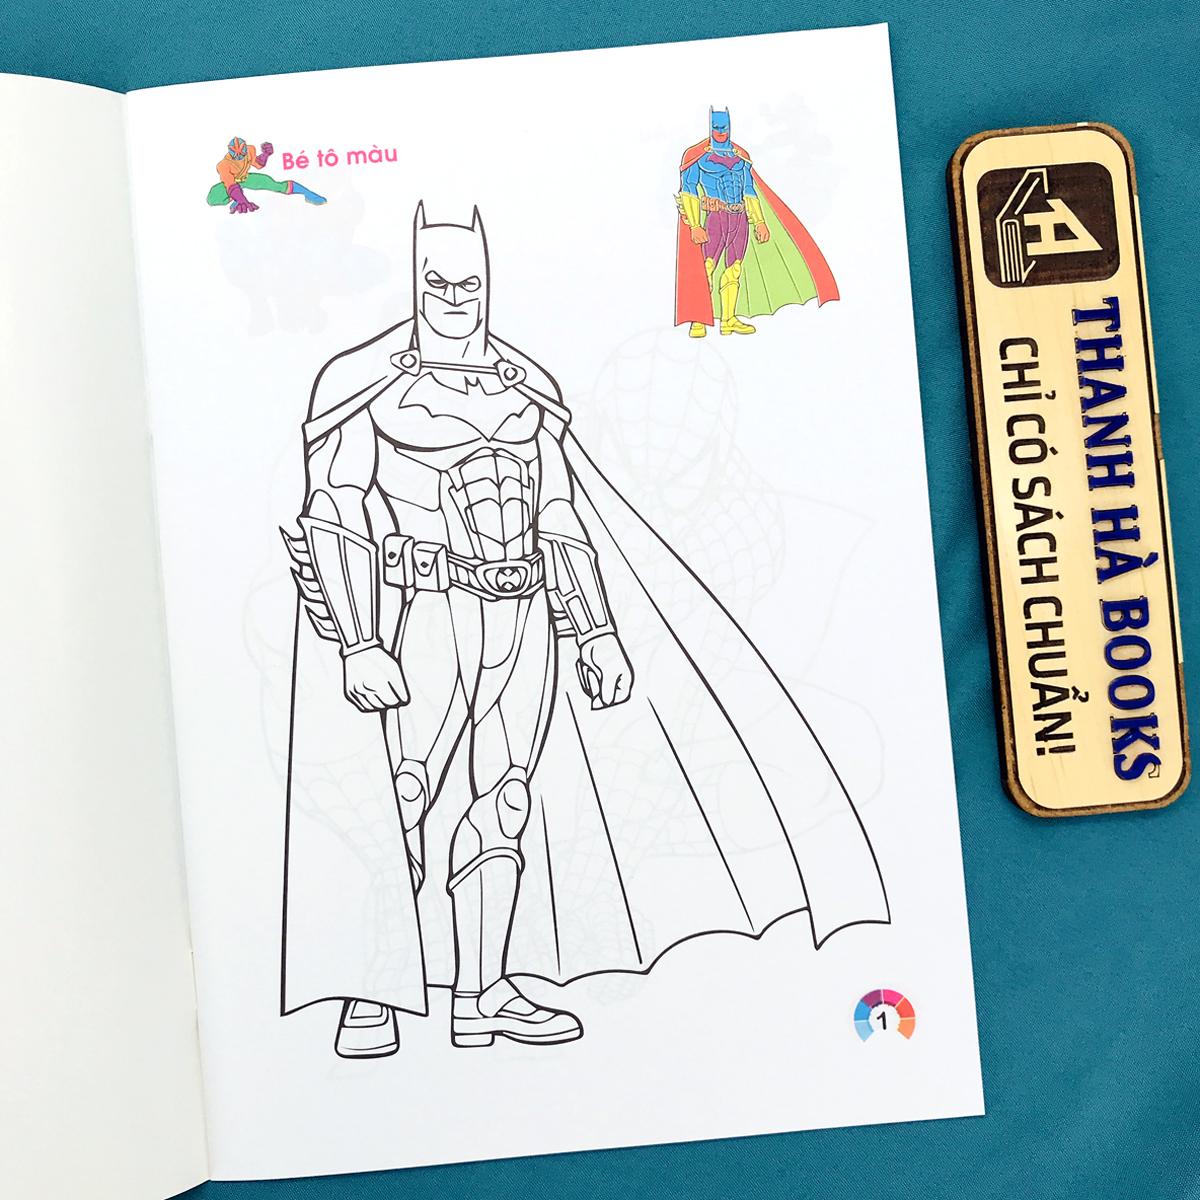 Tranh tô màu siêu nhân dành cho bé trai - Hình tô màu siêu nhân dành cho bé  trai - VnDoc.com | Superman, Humanoid sketch, Christmas coloring pages